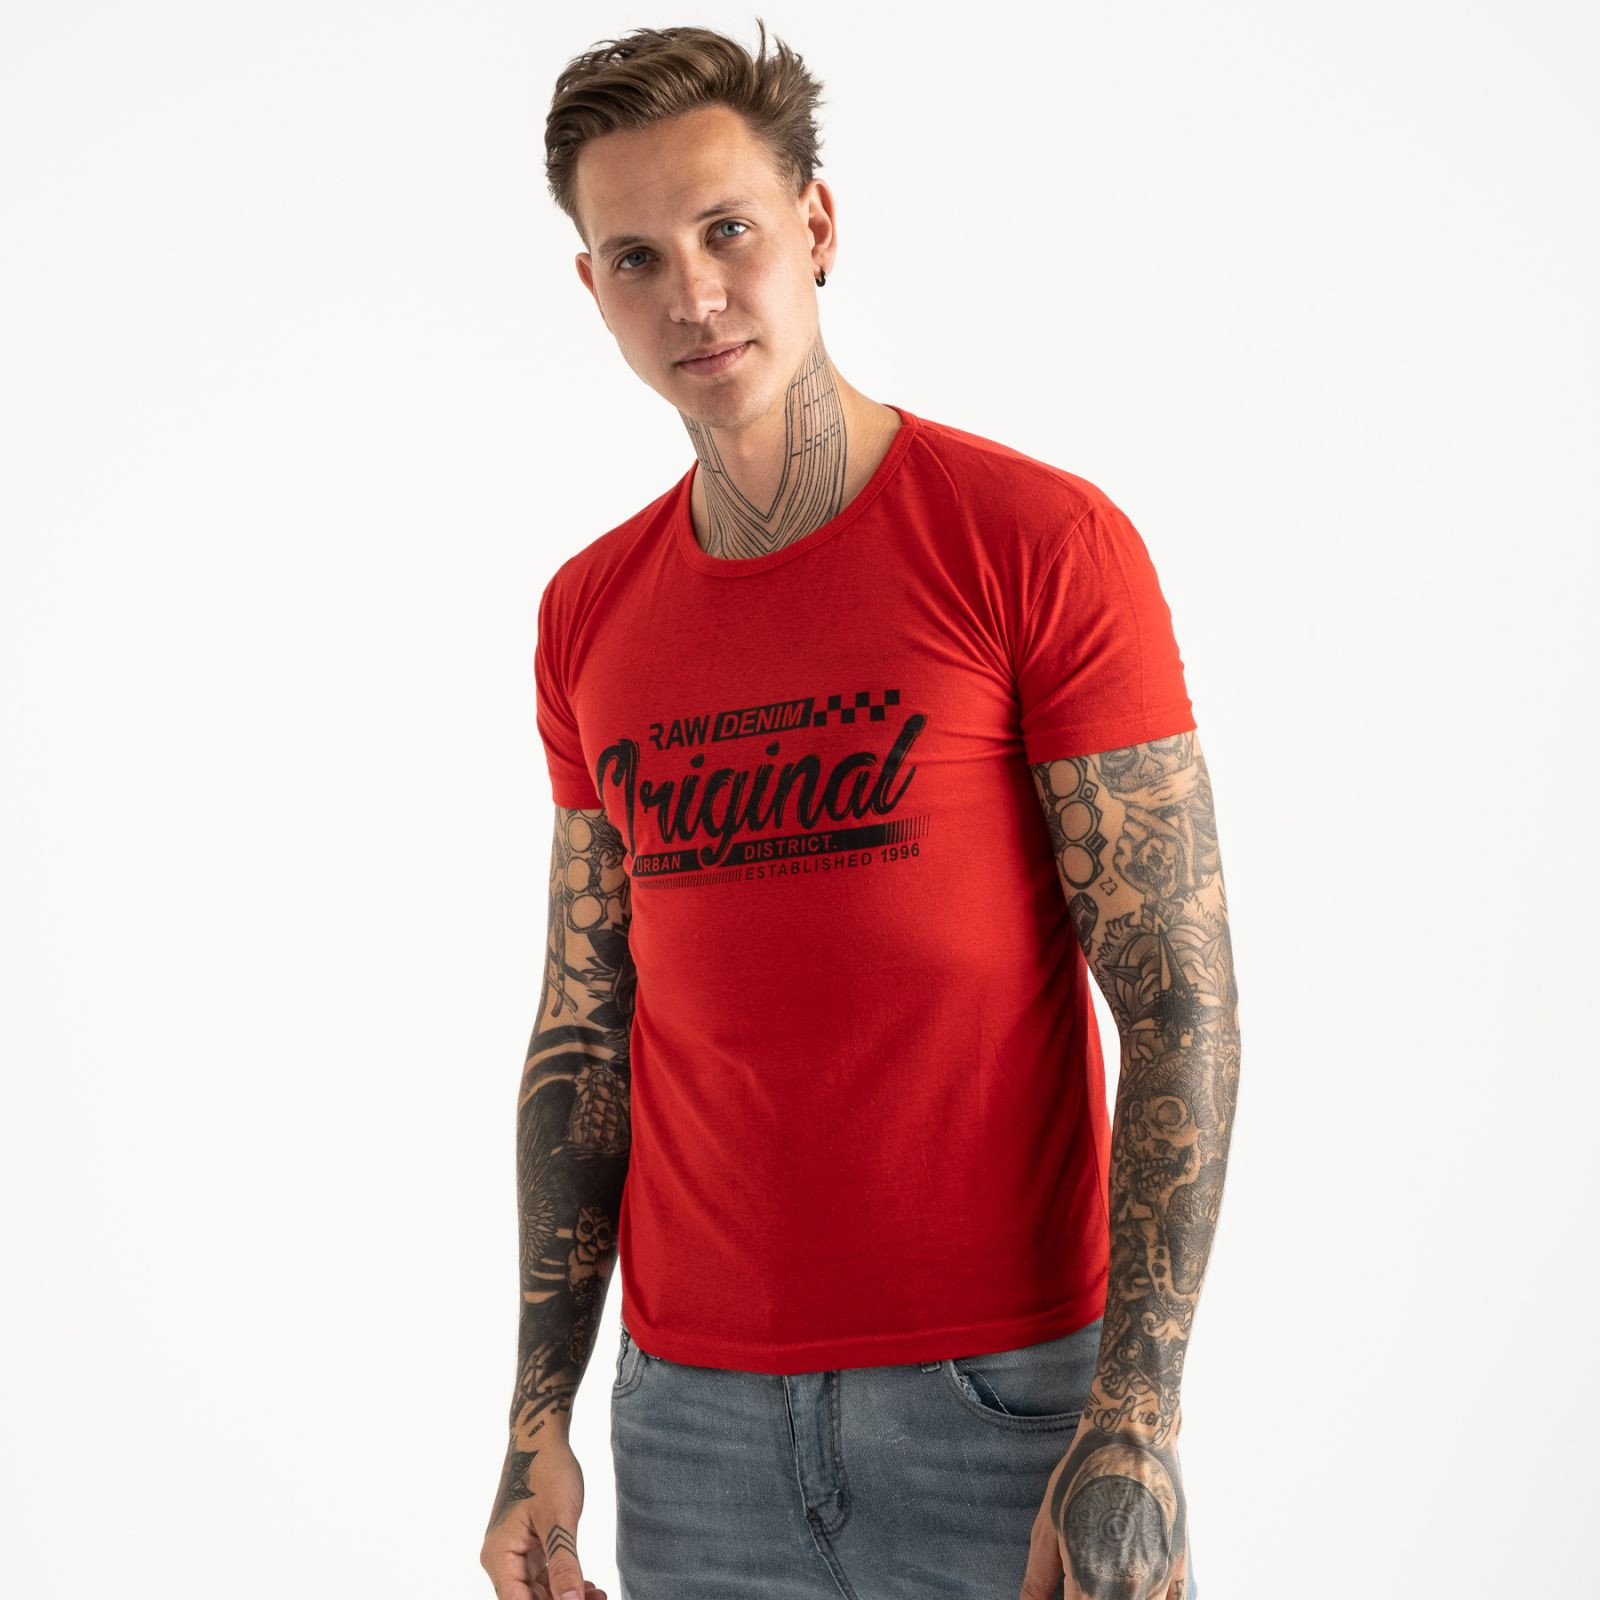 2617-3 красная футболка мужская с принтом (4 ед. размеры: M.L.XL.2XL)